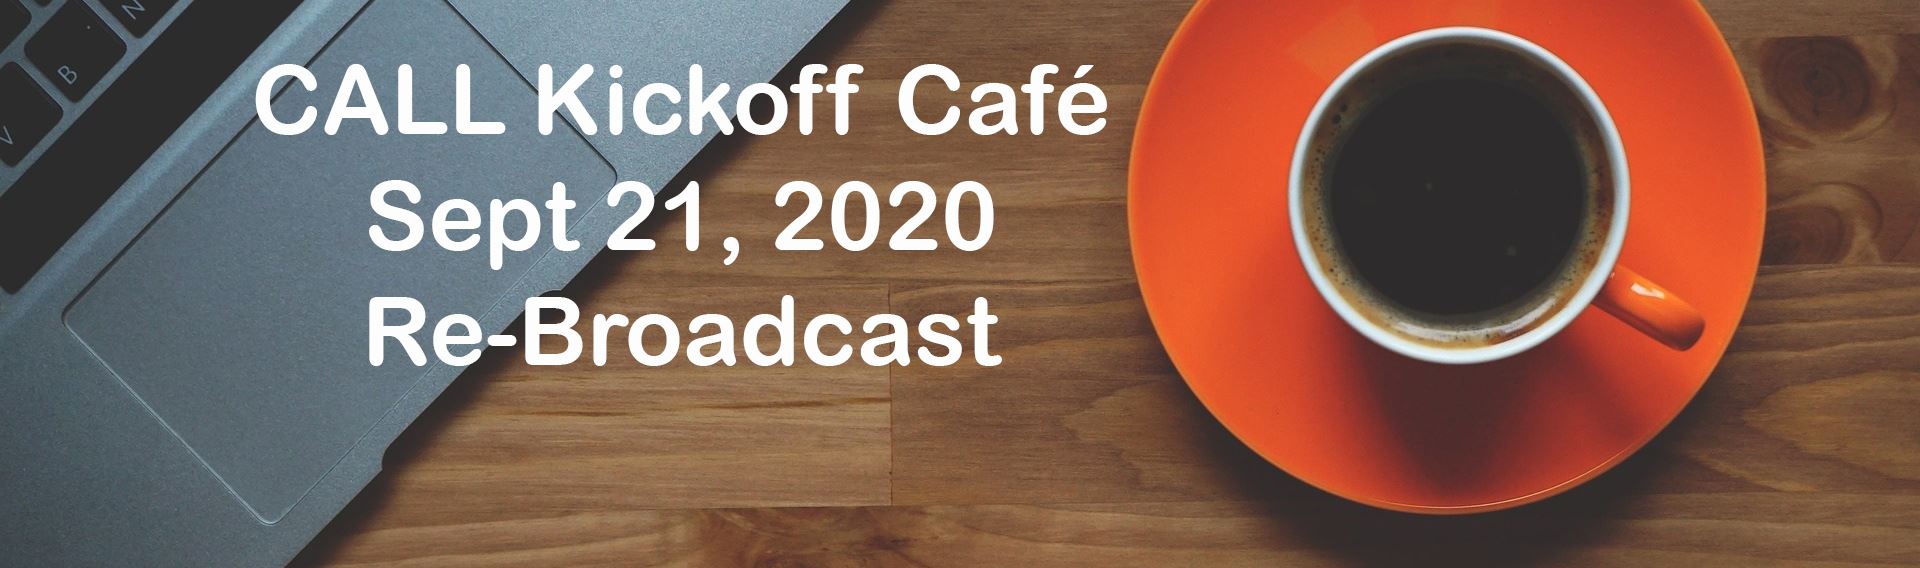 Kickoff Café 2020 Rebroadcast